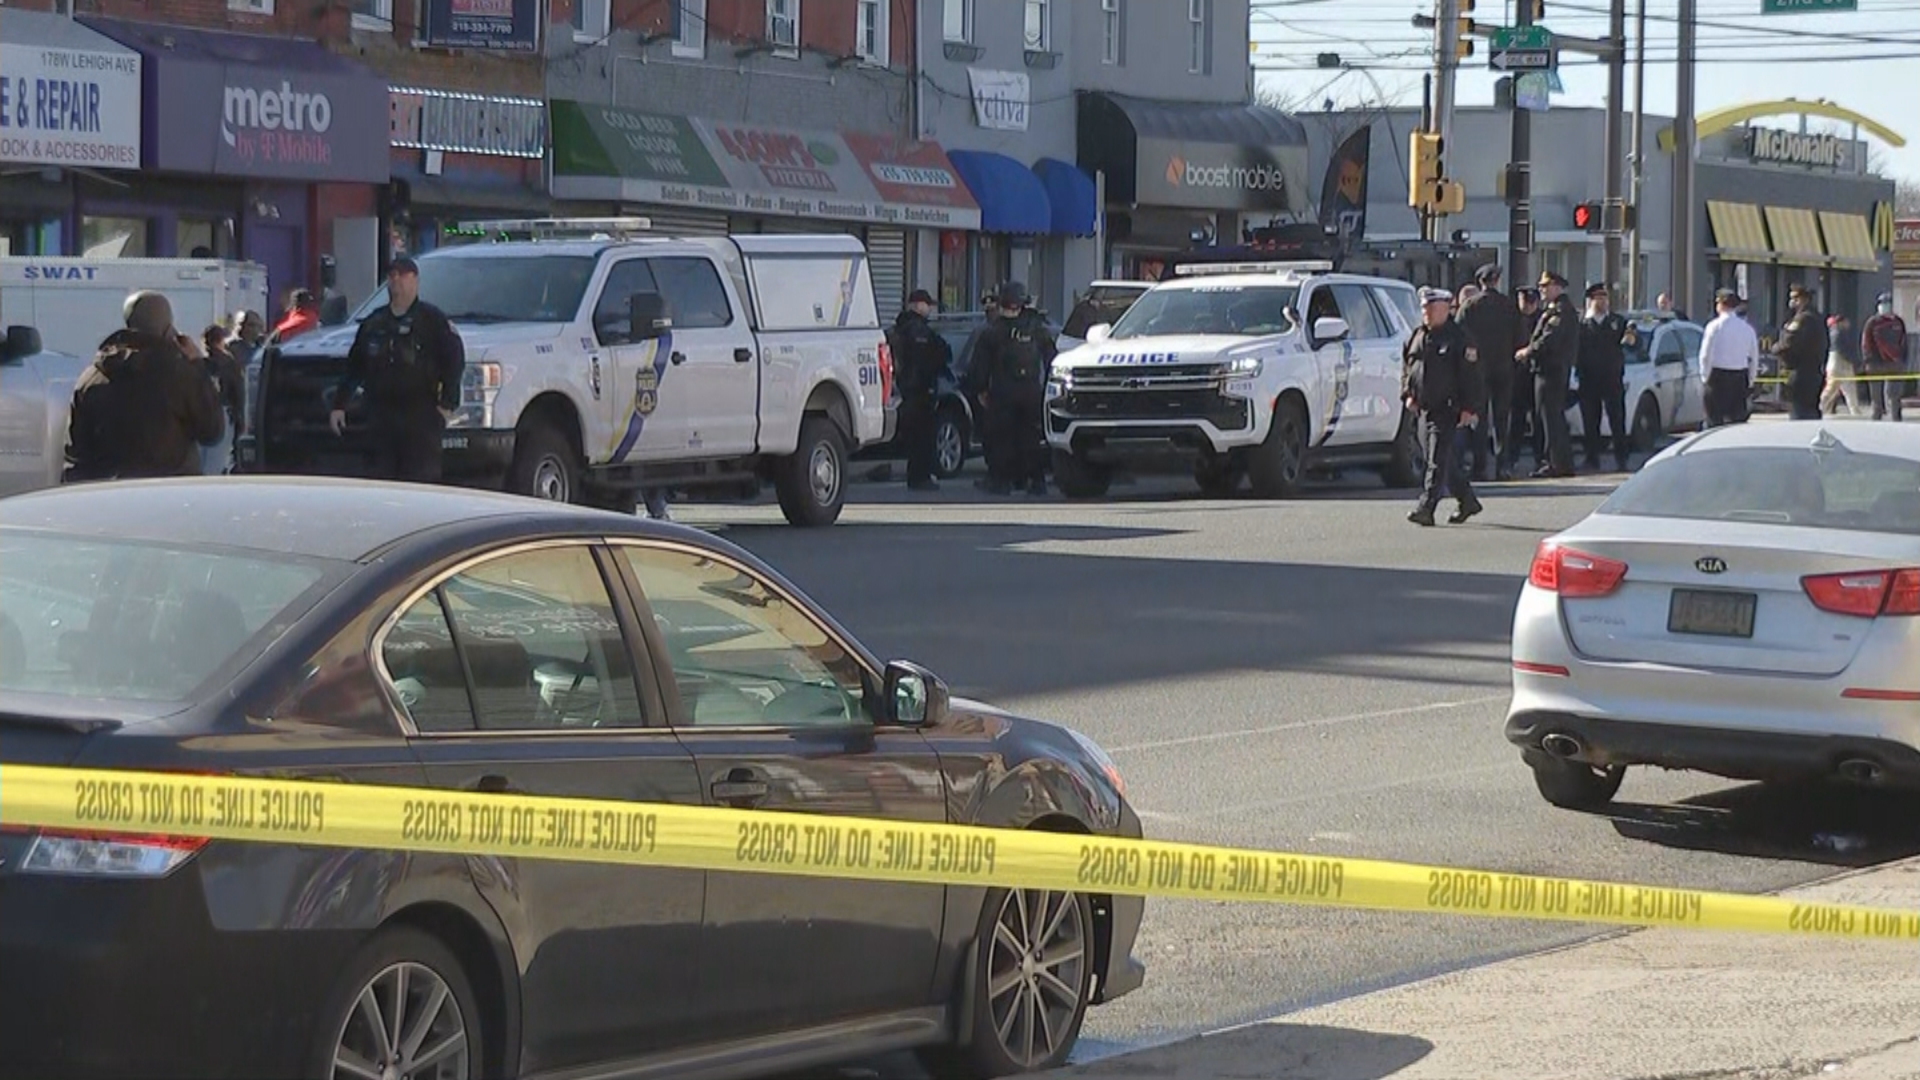 Philadelphia Police Officer Shot While Serving Warrant In Fairhill Neighborhood – CBS Philly